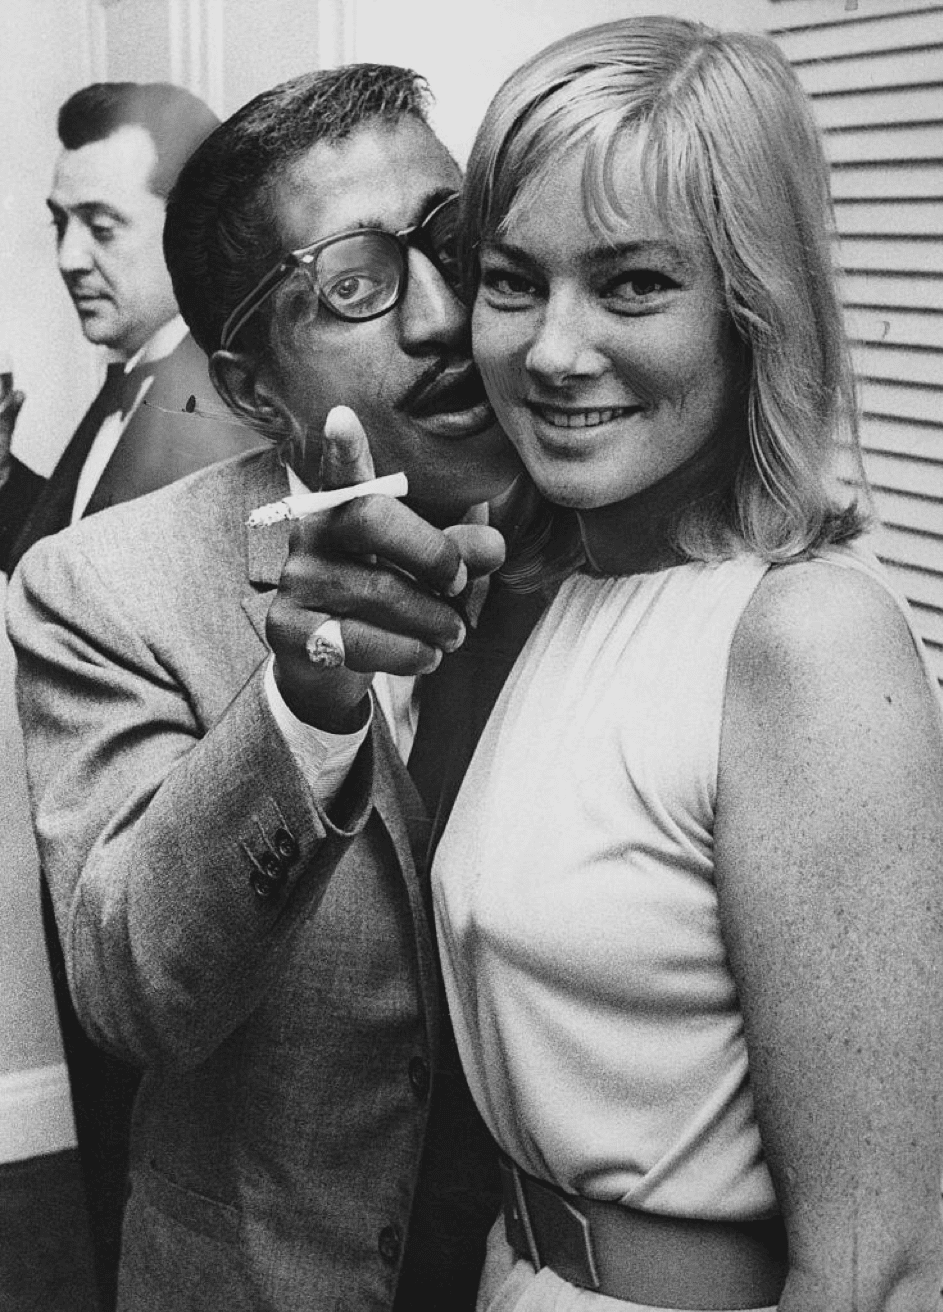 Der amerikanische Entertainer Sammy Davis Jr. (1925 - 1990) trifft seine zukünftige Frau, die schwedische Schauspielerin May Britt, wie sie aus Hollywood am Londoner Flughafen ankommt. 04.07.1960. | Quelle: Getty Images